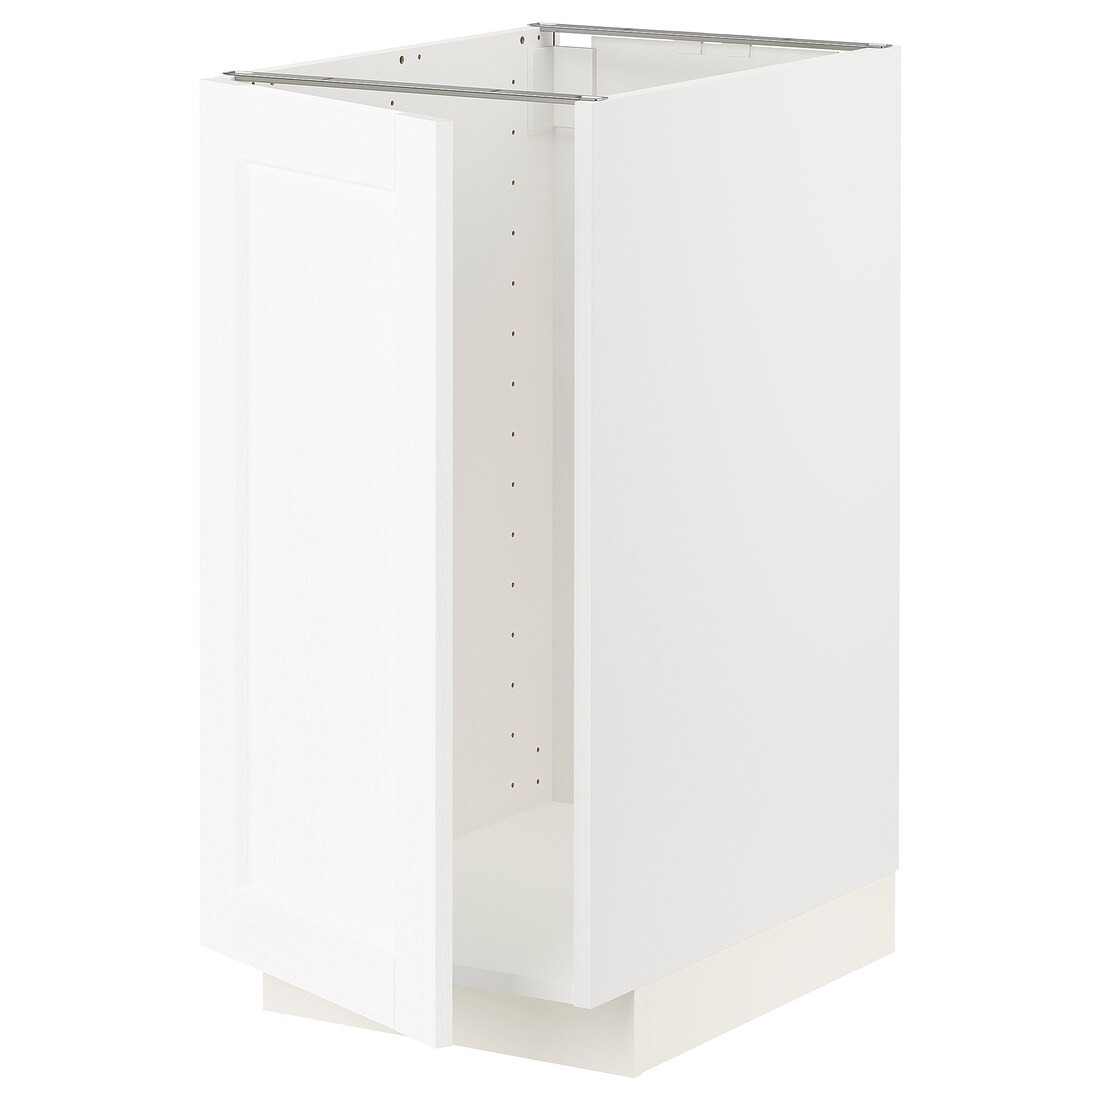 IKEA METOD МЕТОД Наполный шкаф под мойку / сортировку мусора, белый Enköping / белый имитация дерева, 40x60 см 39473381 394.733.81